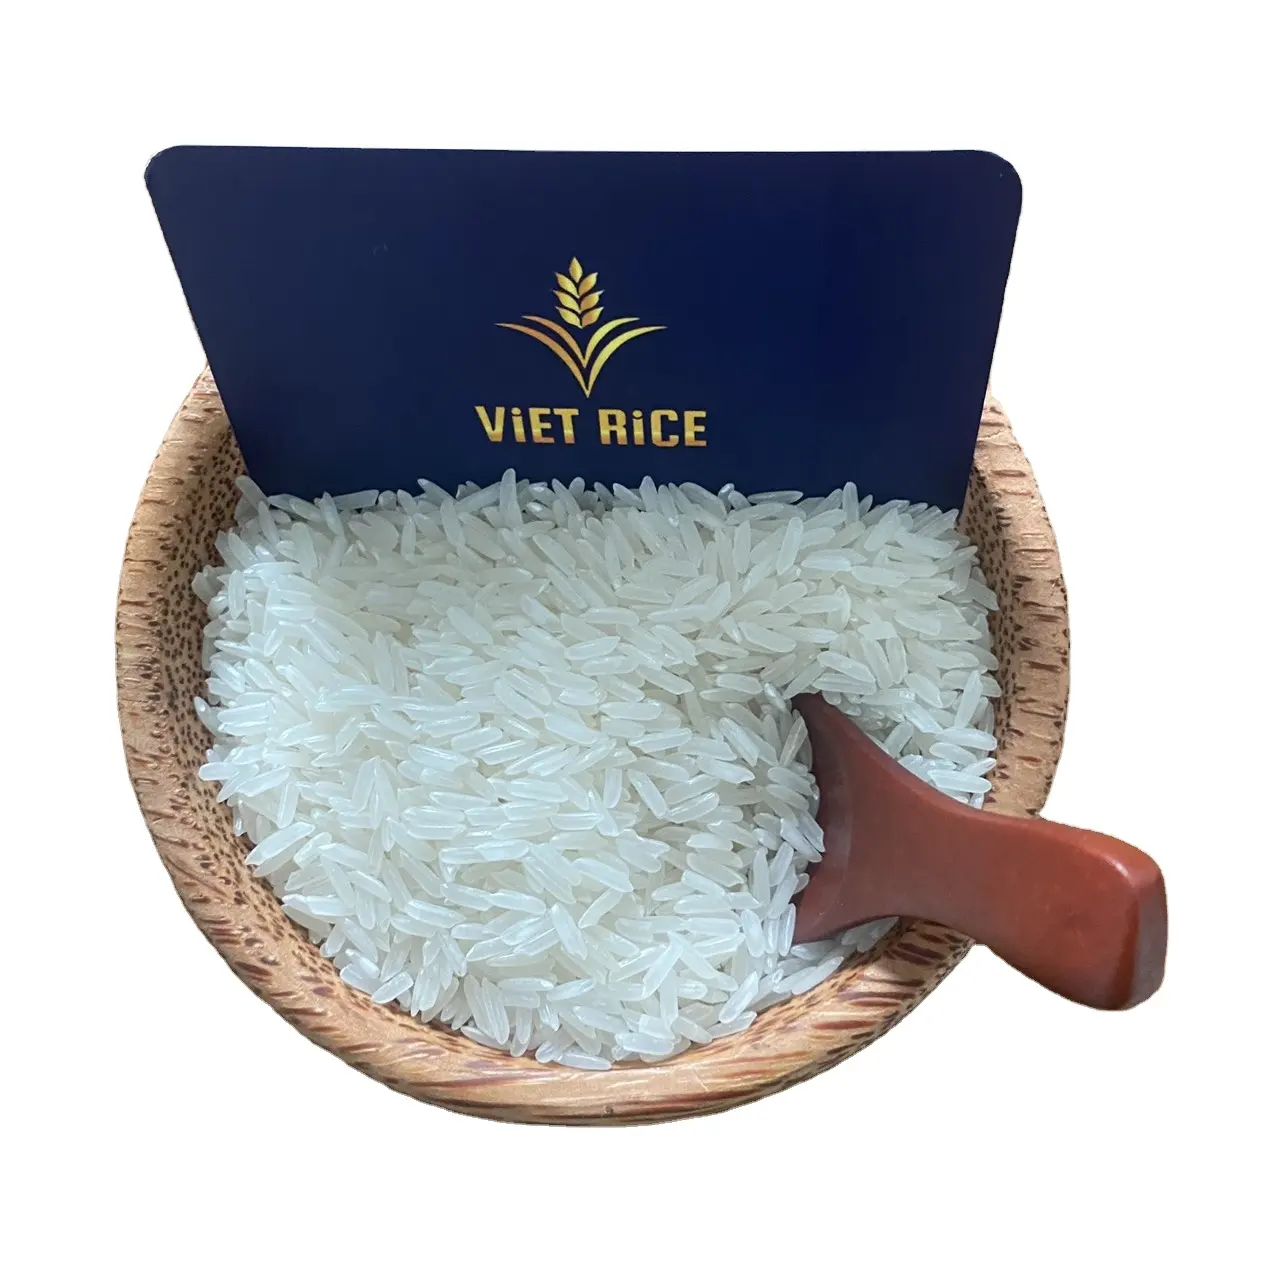 Gạo kdm đạt tiêu chuẩn xuất khẩu được xuất khẩu với số lượng lớn. Nhanh lên để đặt hàng để có được giá tốt PLS + 84 962605191